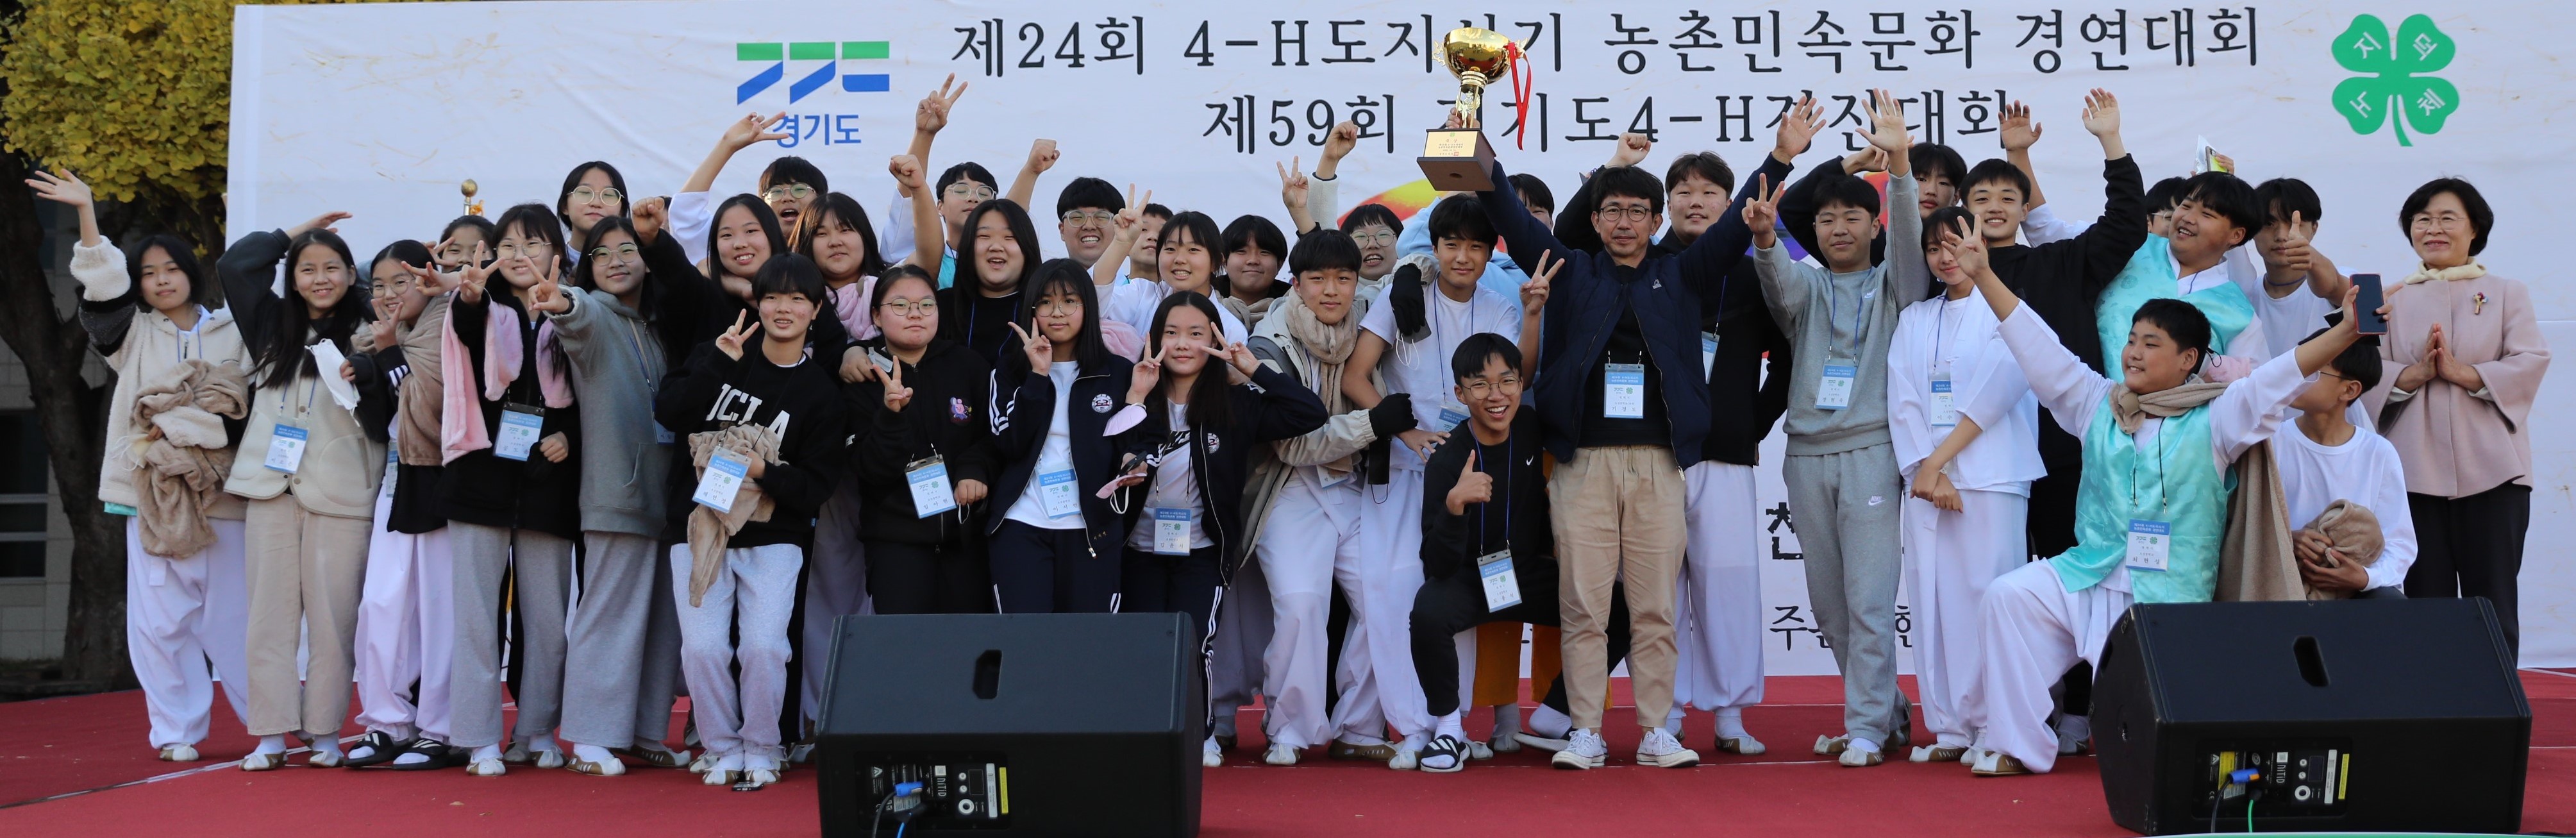 경기도4-H경진대회 15개 시군 참여 개최